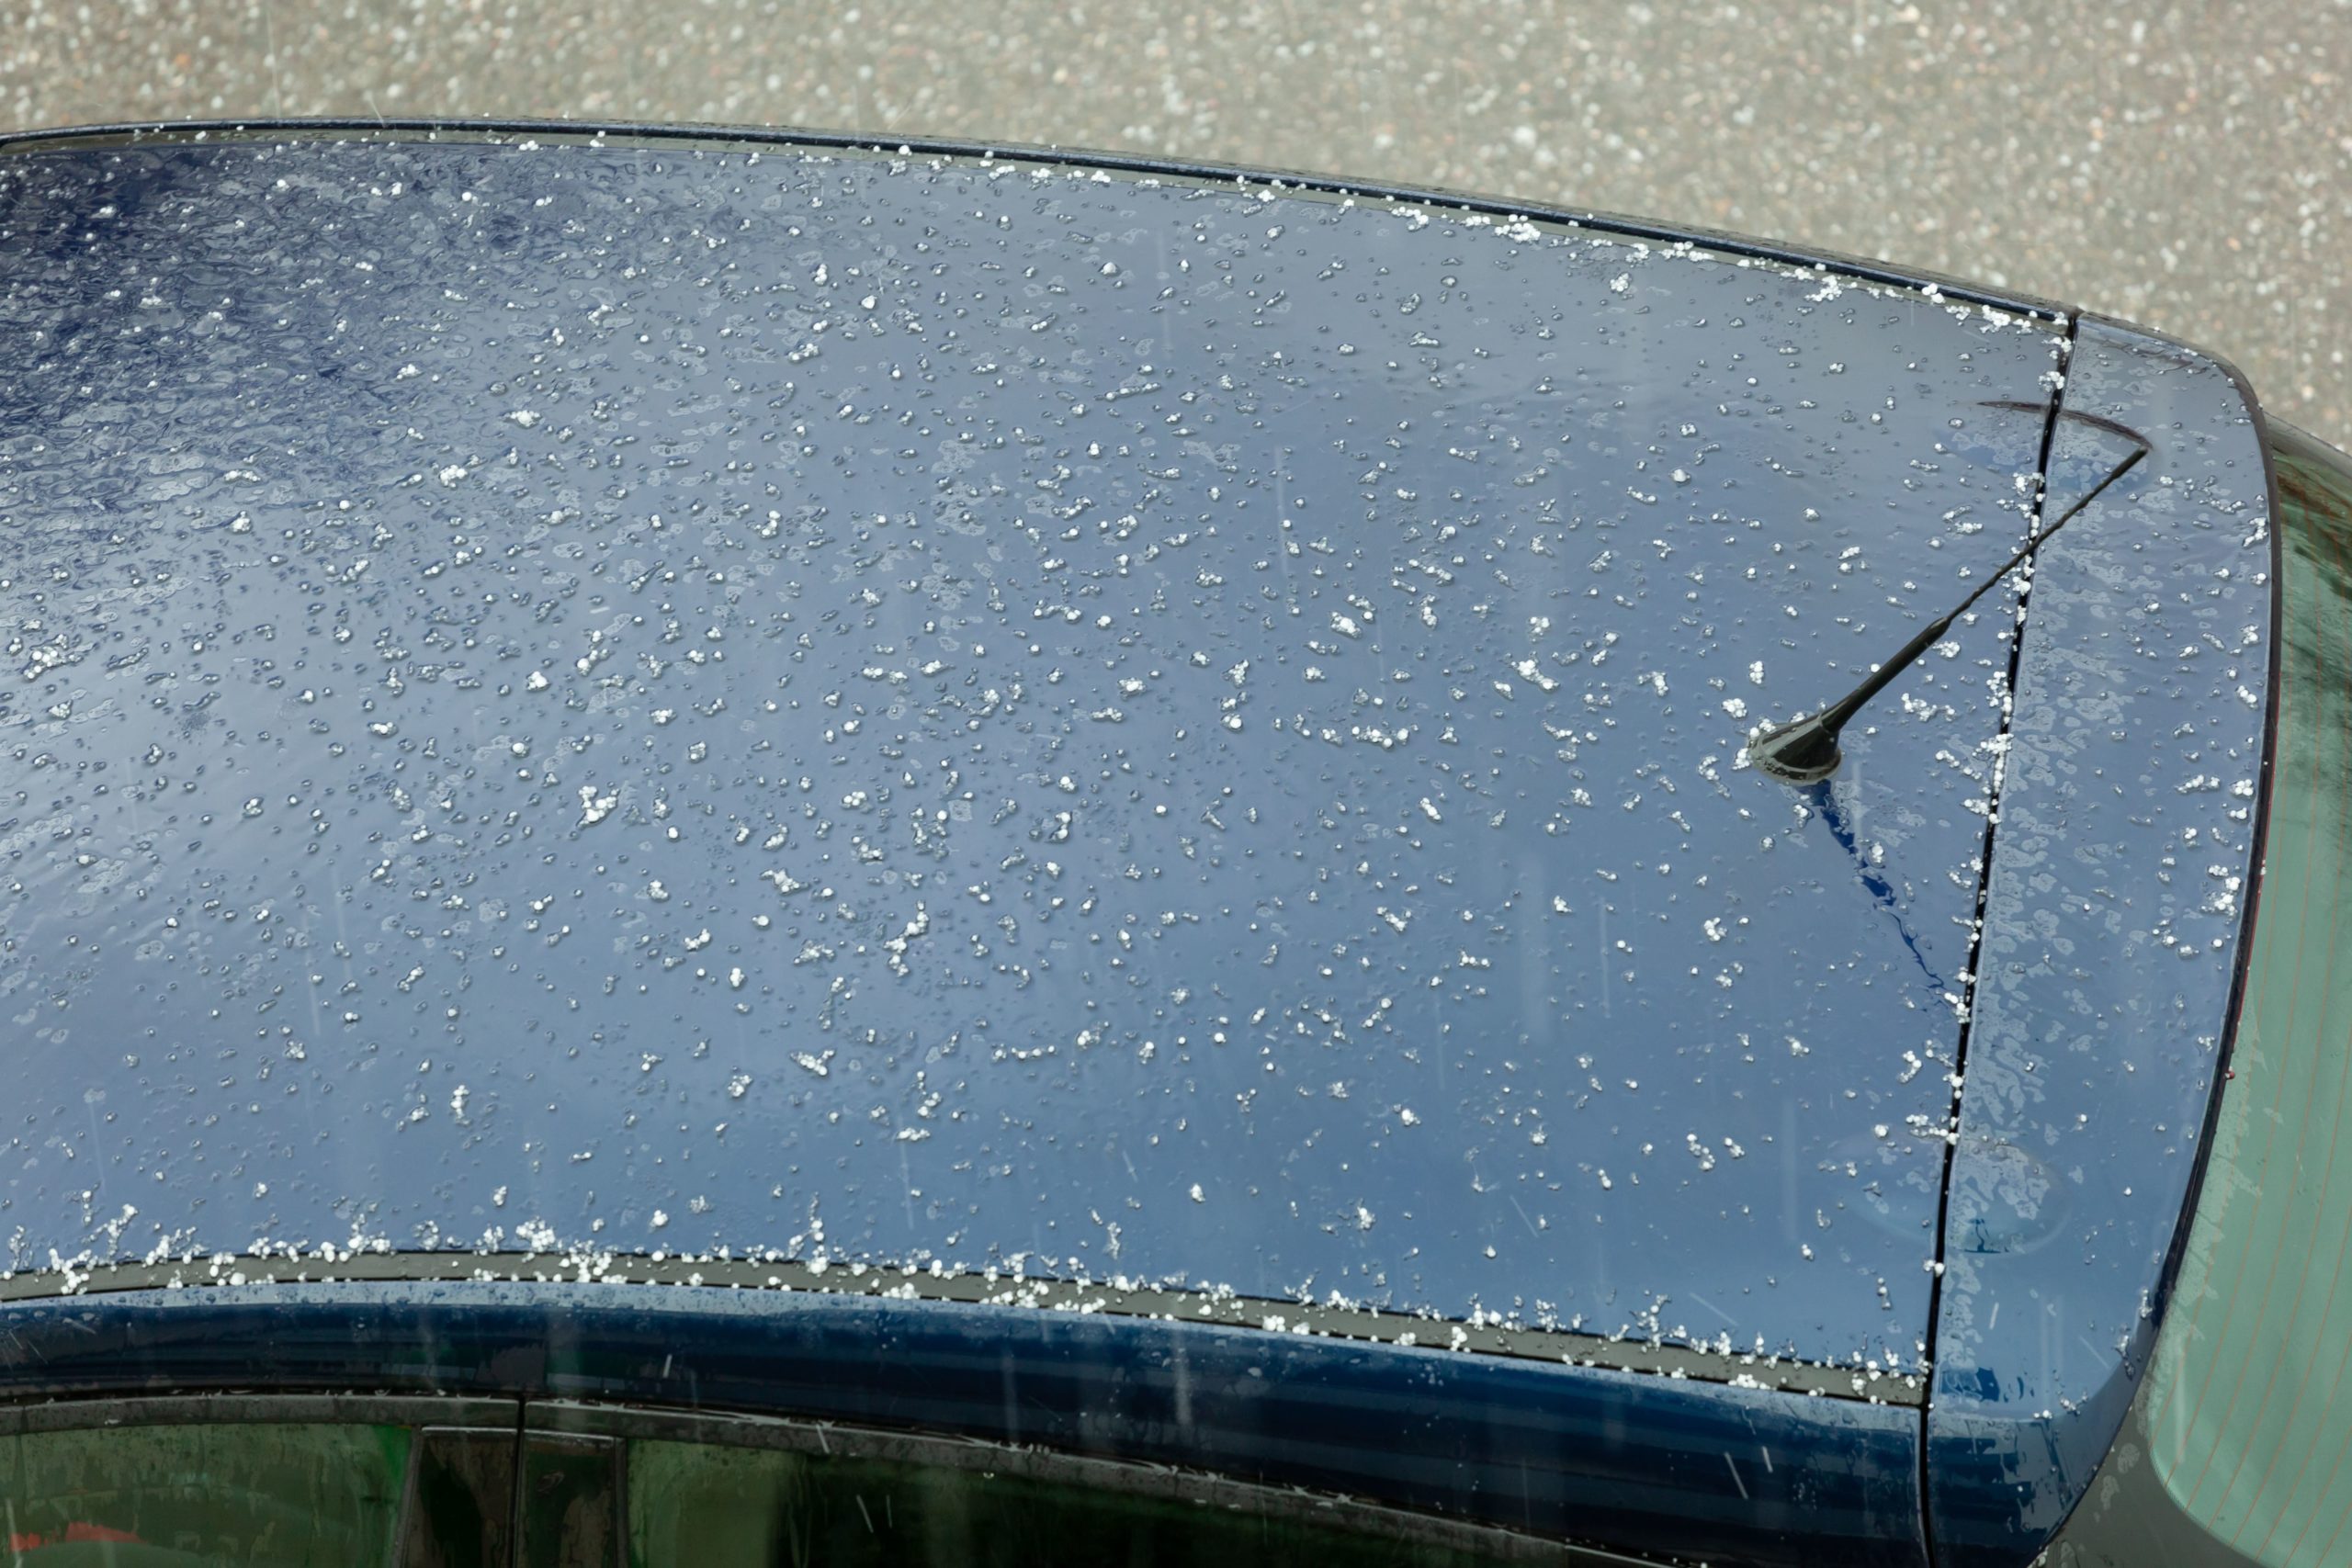 does hail damage claim raise car insurance rates